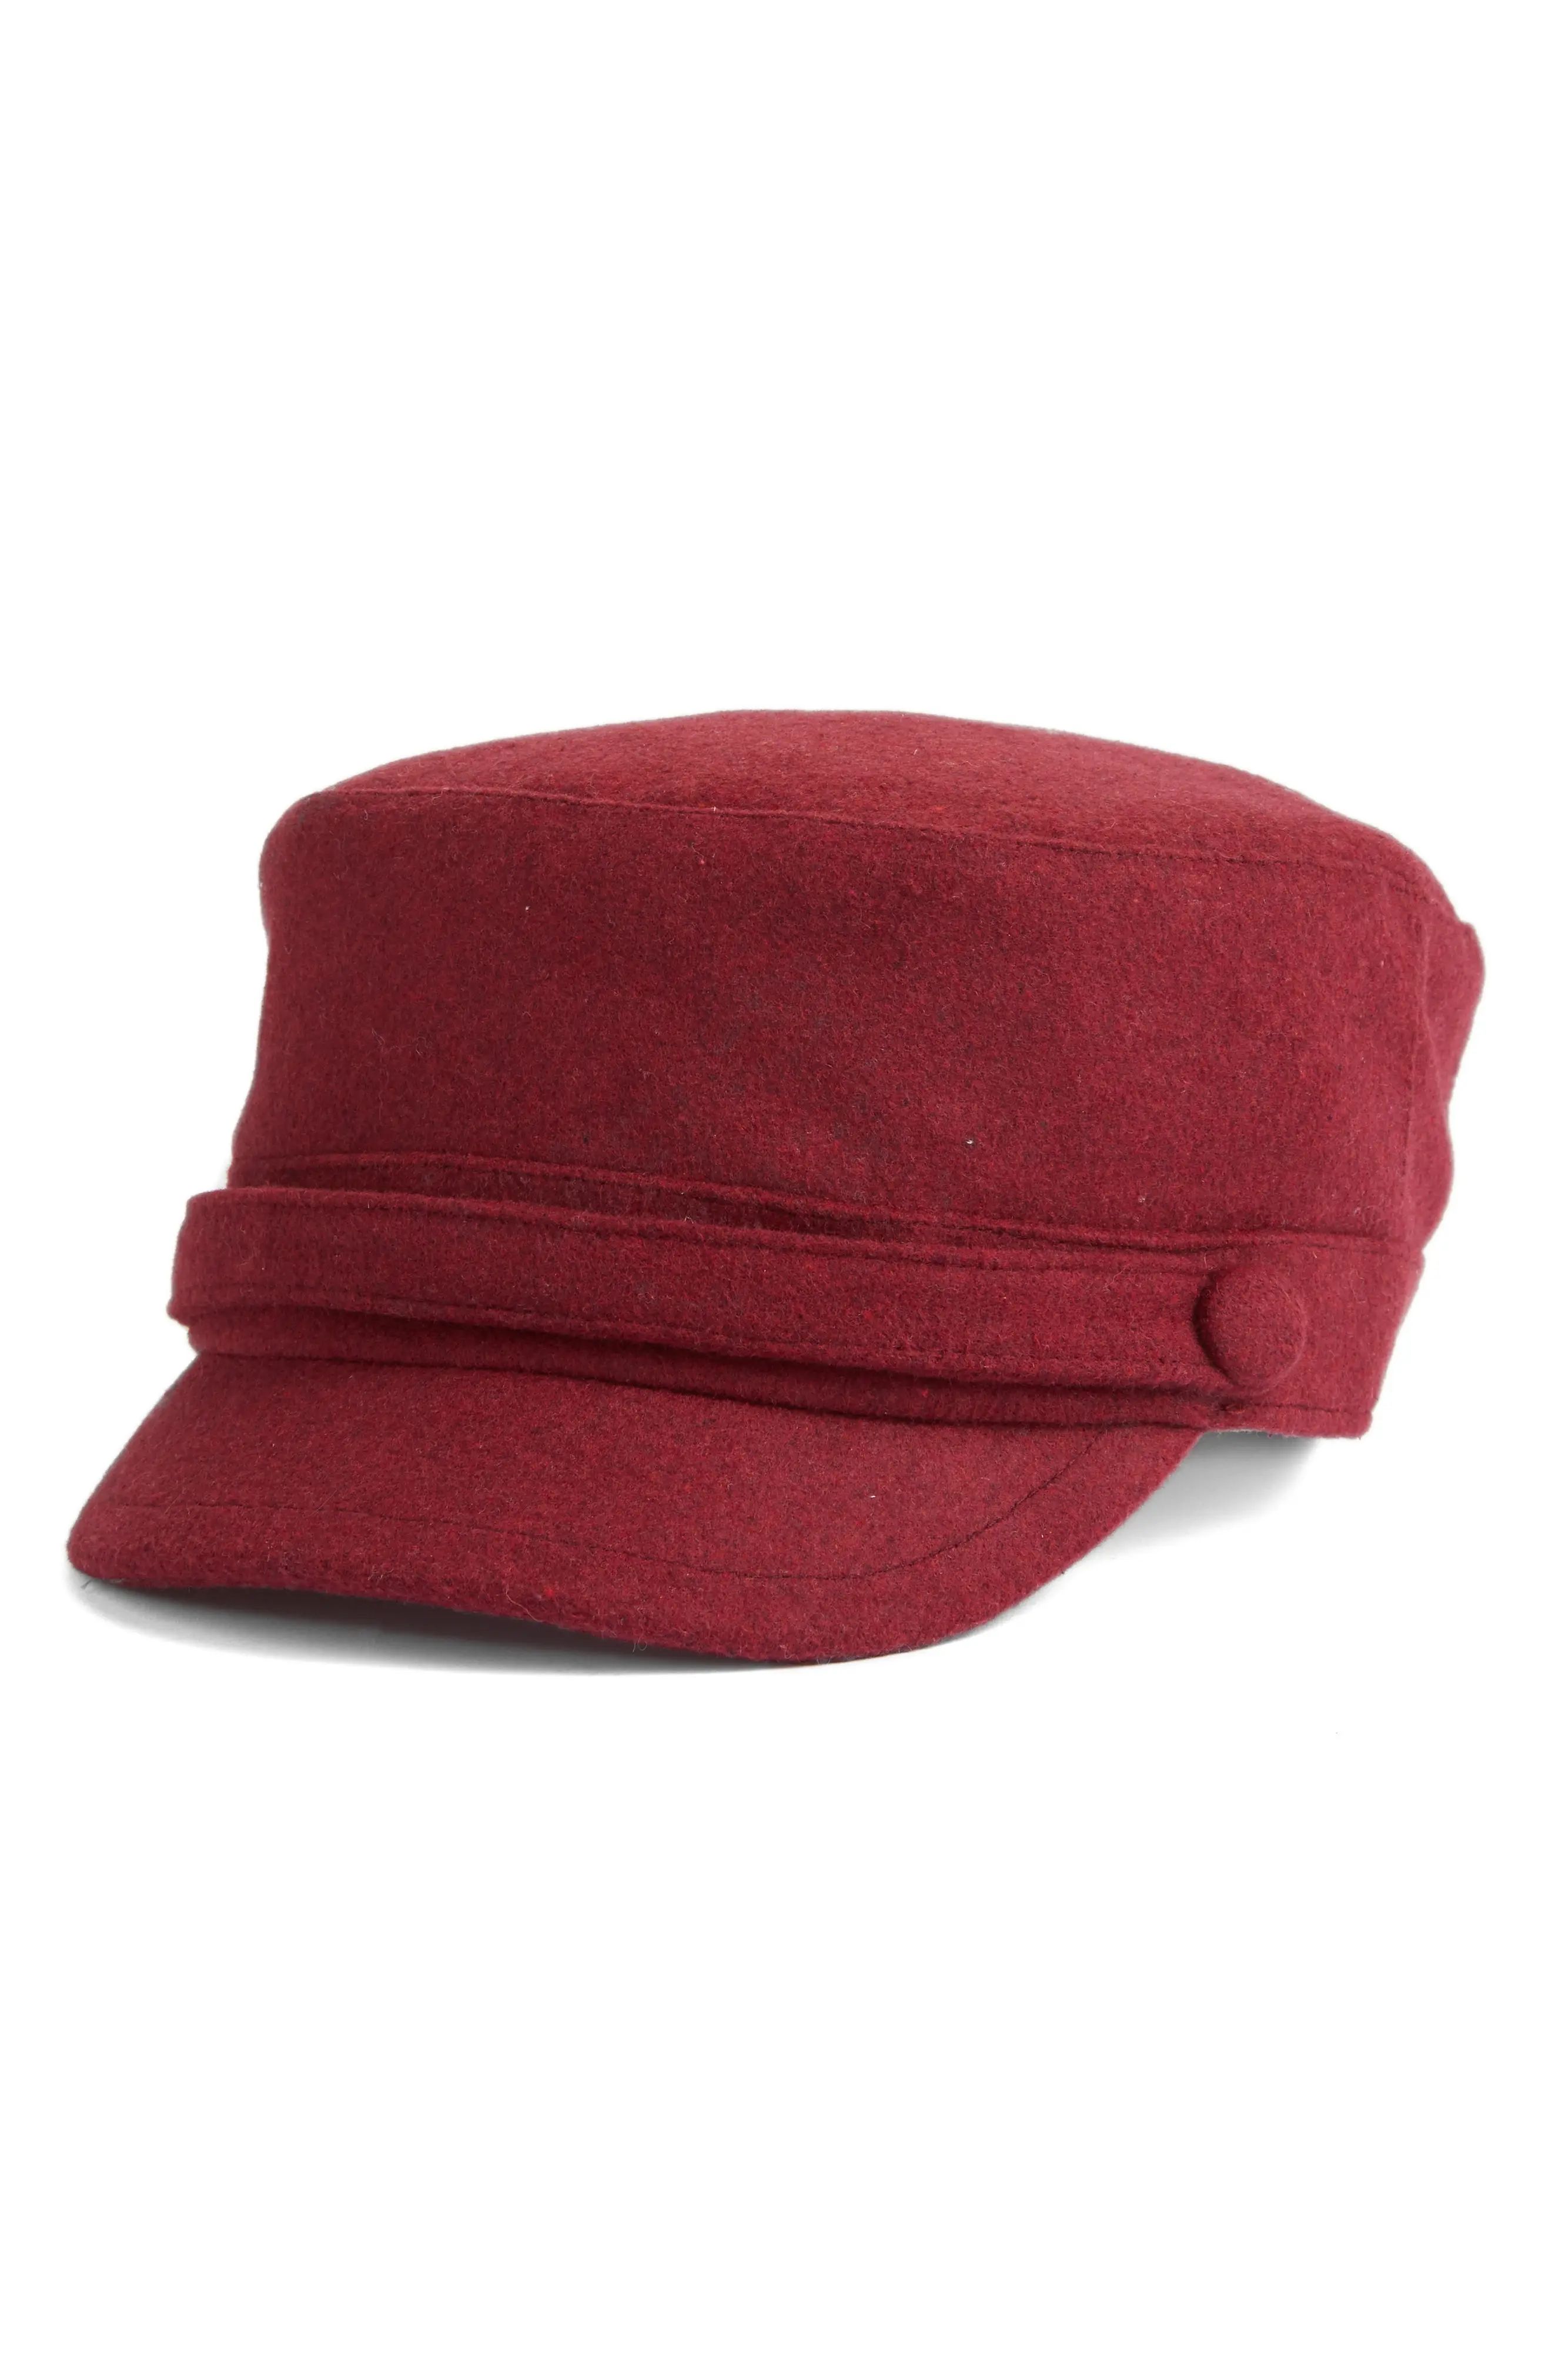 Women's San Diego Hat Cadet Cap - Red | Nordstrom